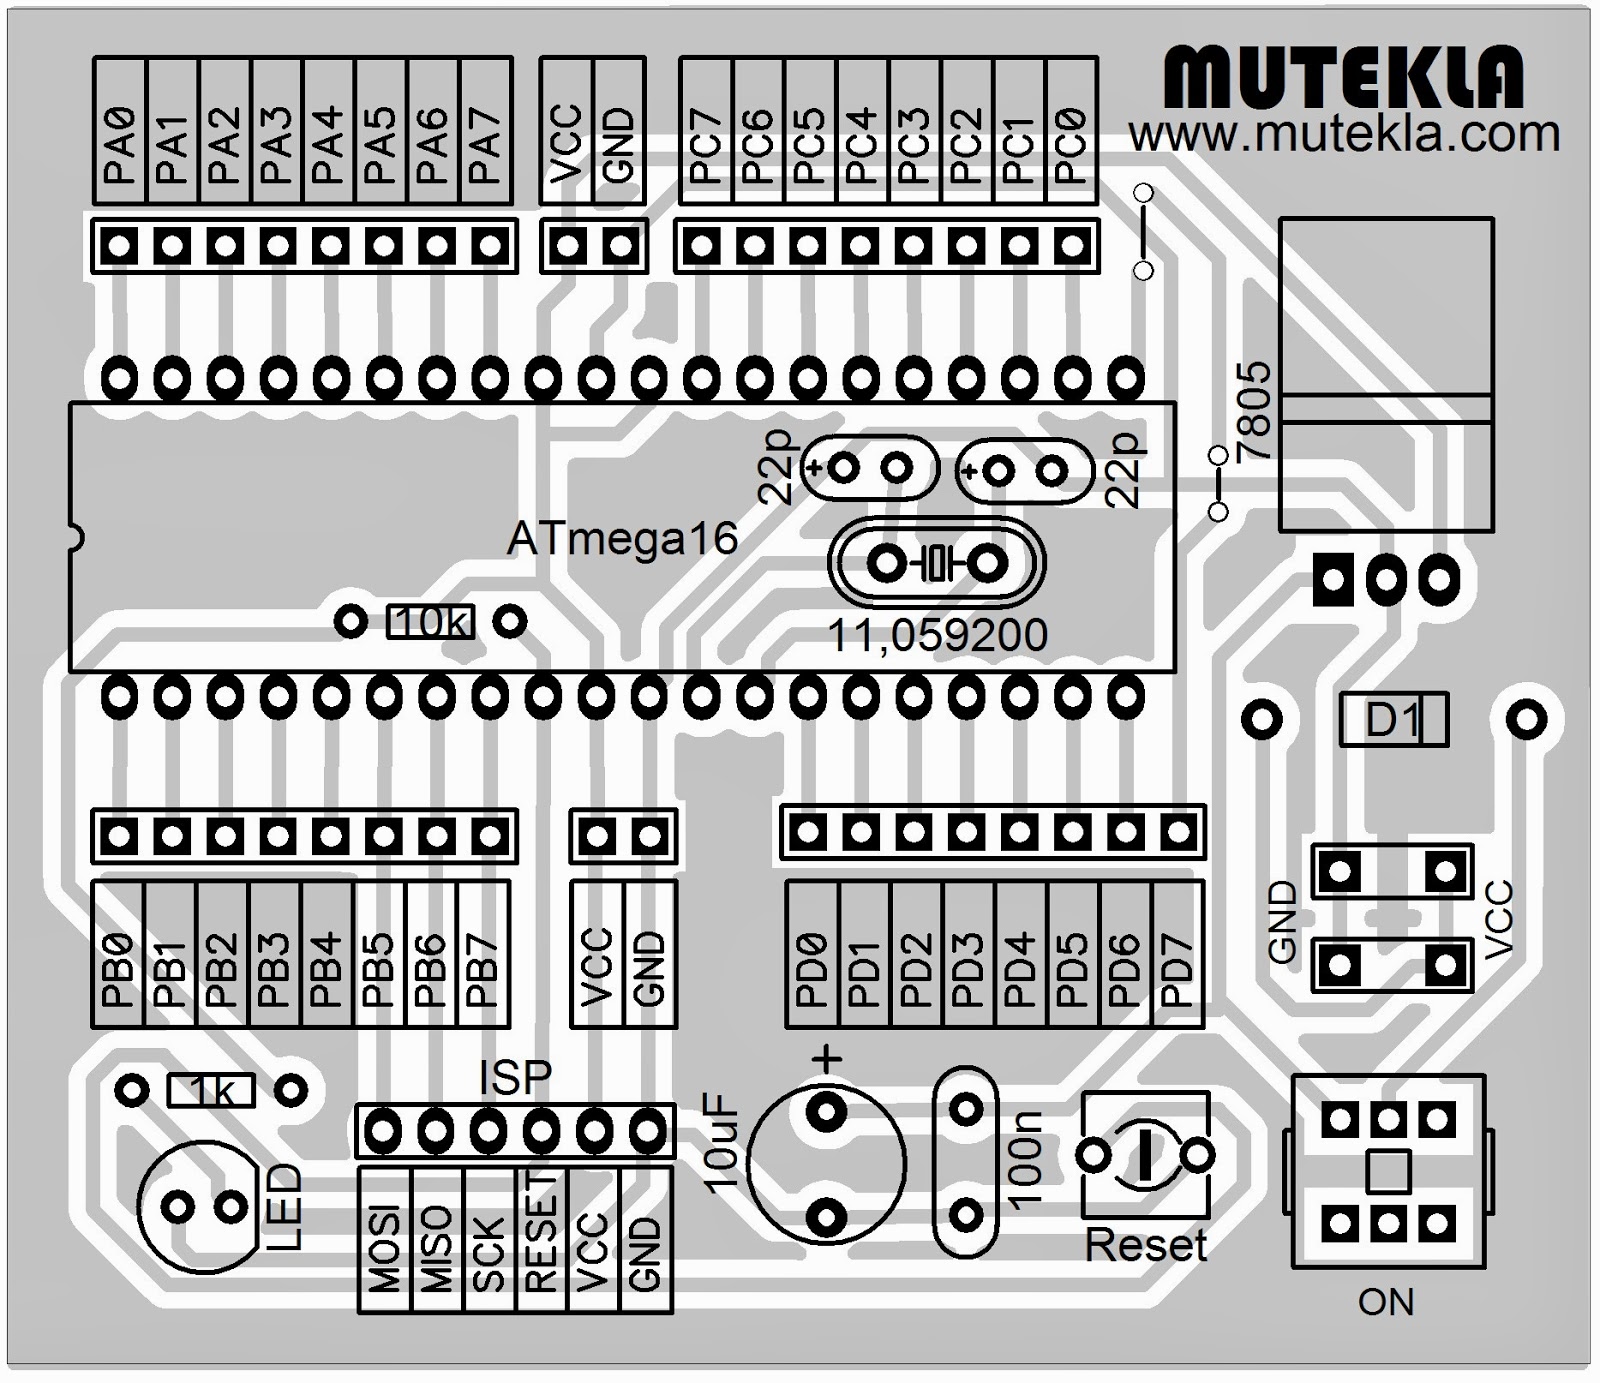  Desain  Minimum Sistem Microcontroller Atmega 16 Ala 